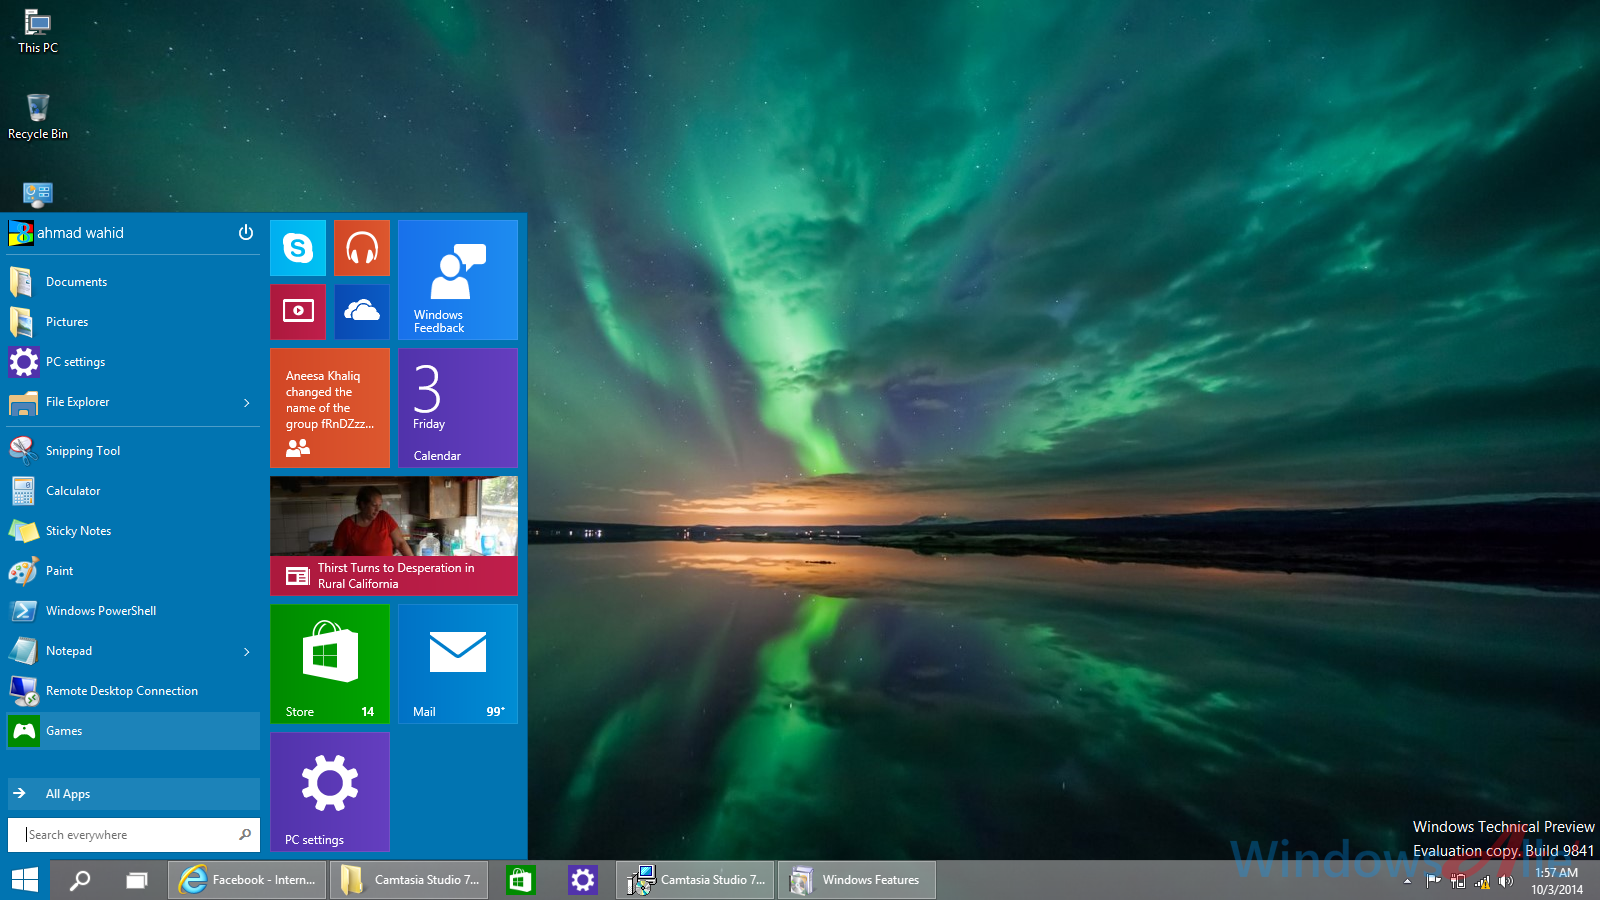 change the Start Menu of Windows 10 to make it look similar to Windows